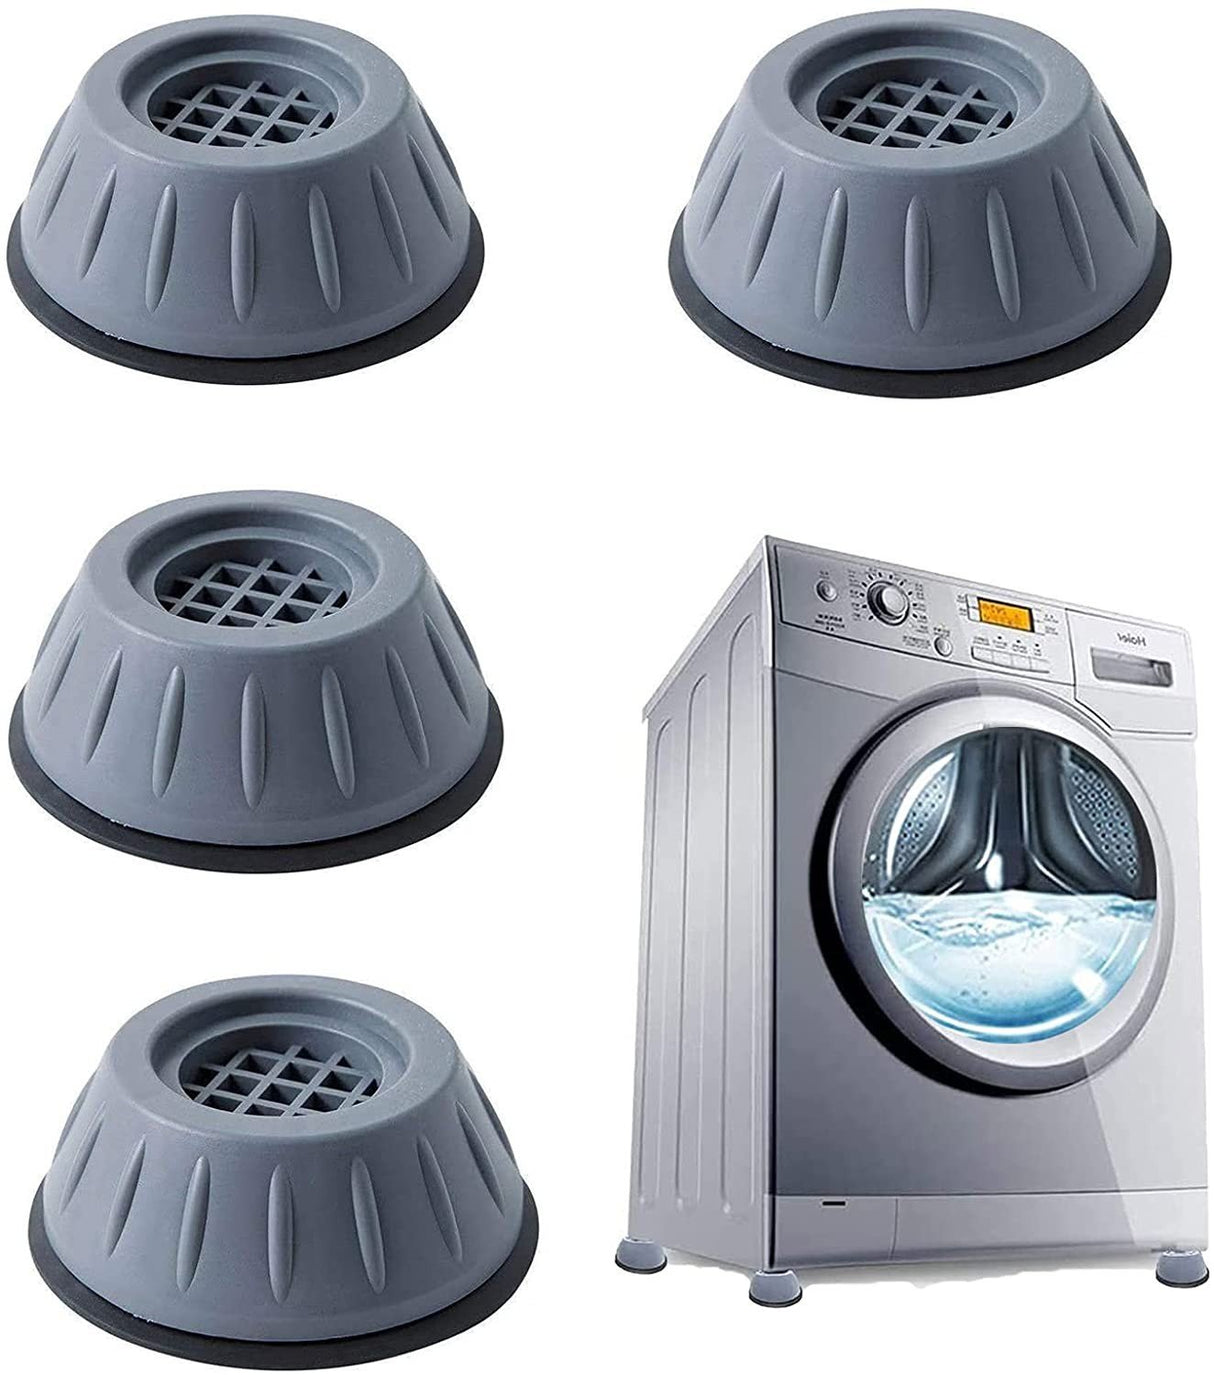 https://fleuurs.com/cdn/shop/products/piedini-per-lavatrice-4-pezzi-antiscivolo-e-antivibrazione-28921210044554.jpg?v=1637796070&width=1214